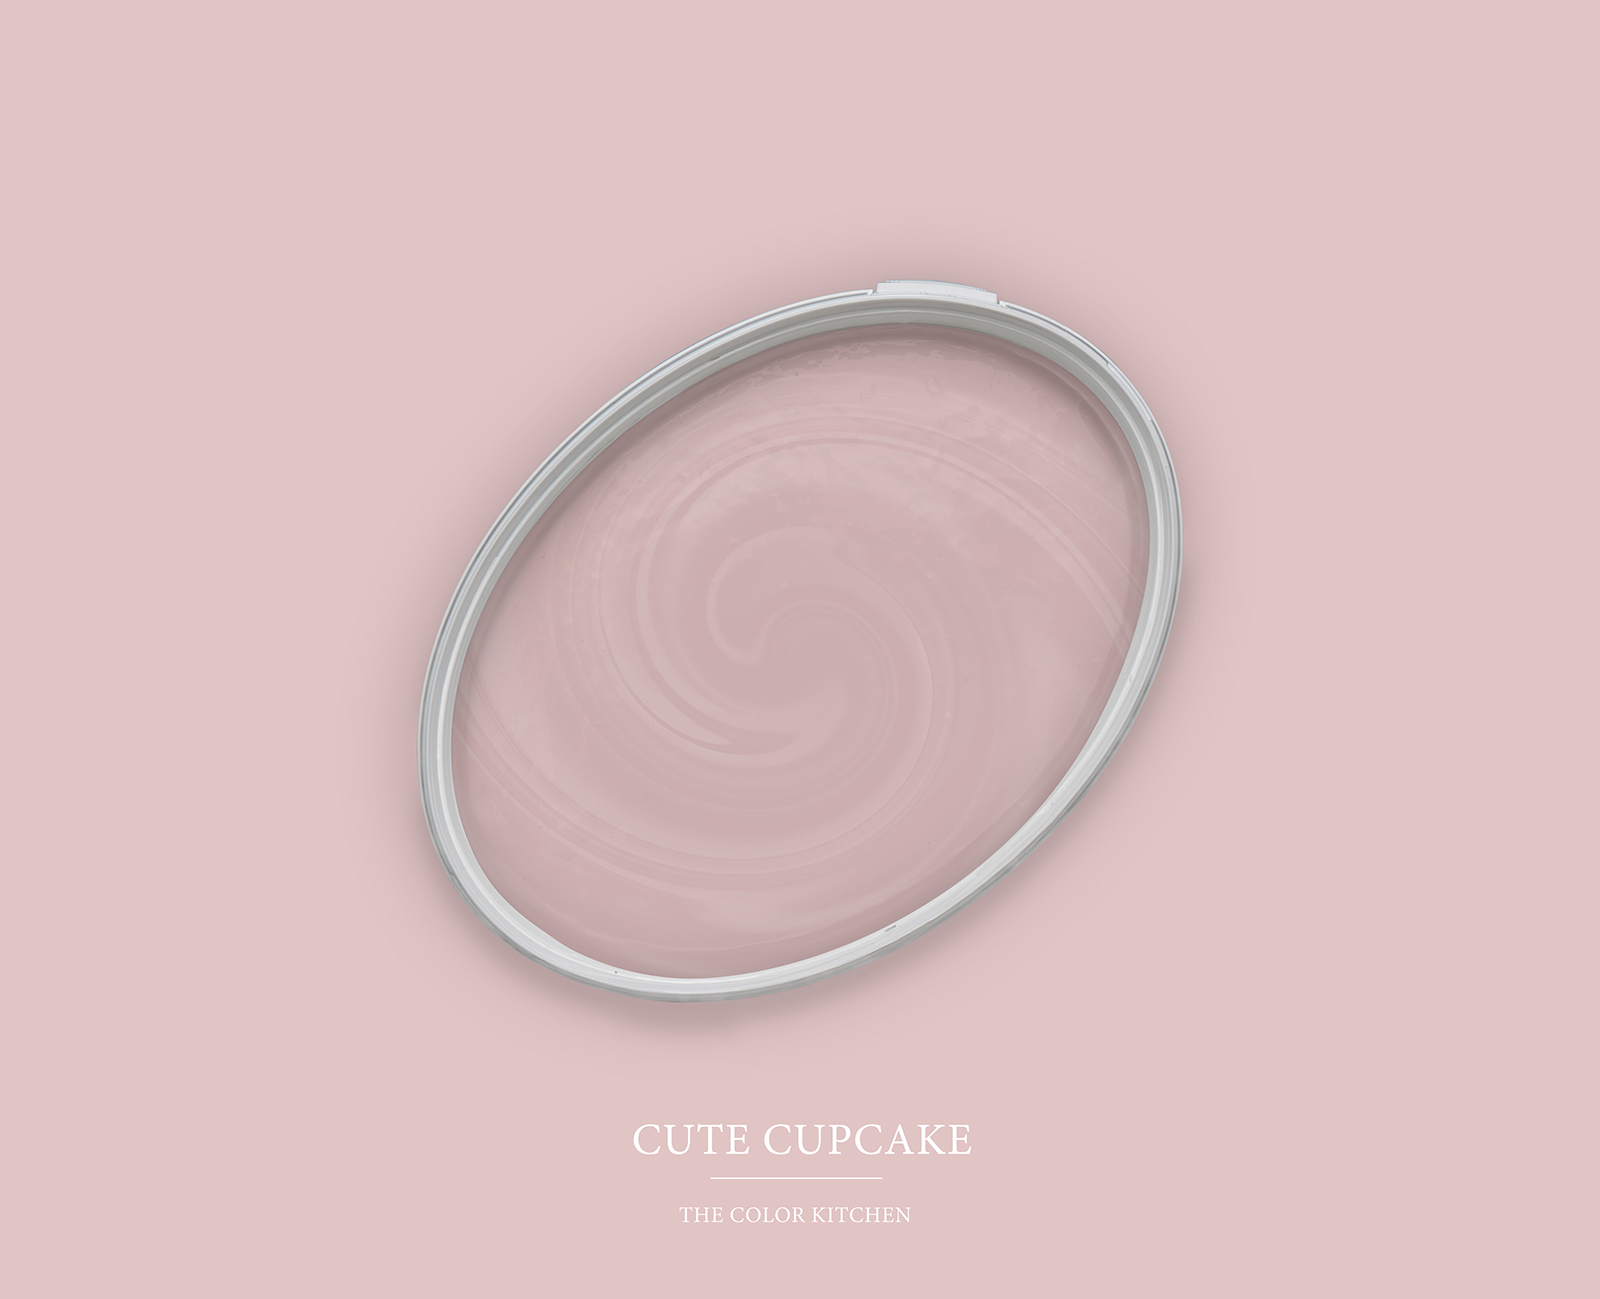 Pittura murale TCK7008 »Cute Cupcake« in rosa delicato – 5,0 litri
